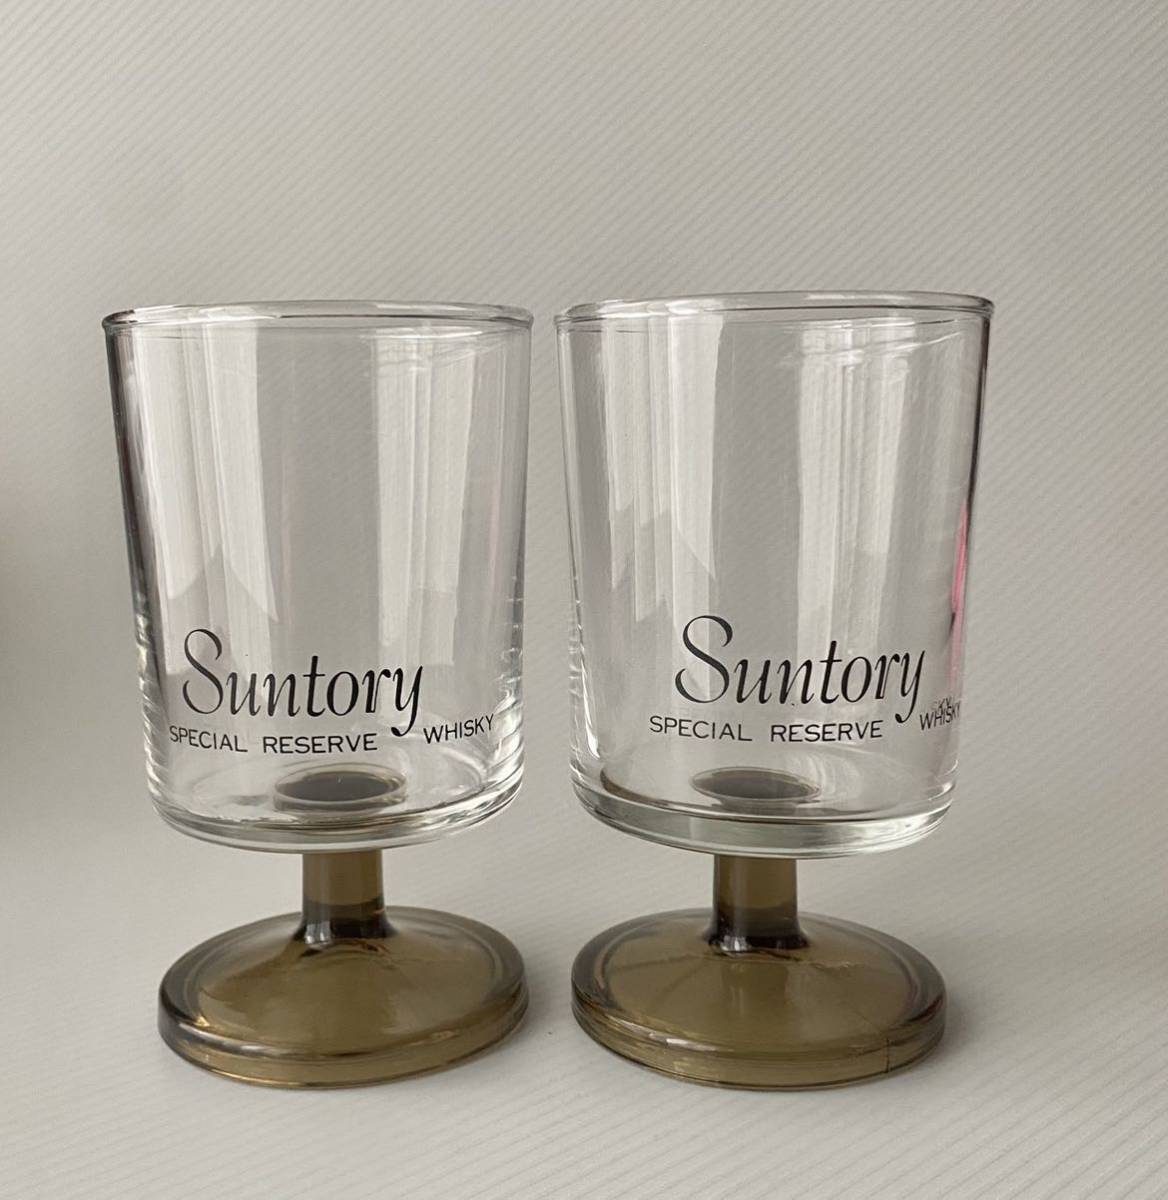 サントリー SUNTORY スペシャルリザーブ SPECIAL RESERVE ウィスキー WHISKY グラス 足付き 昭和レトロ 2個セットの画像7